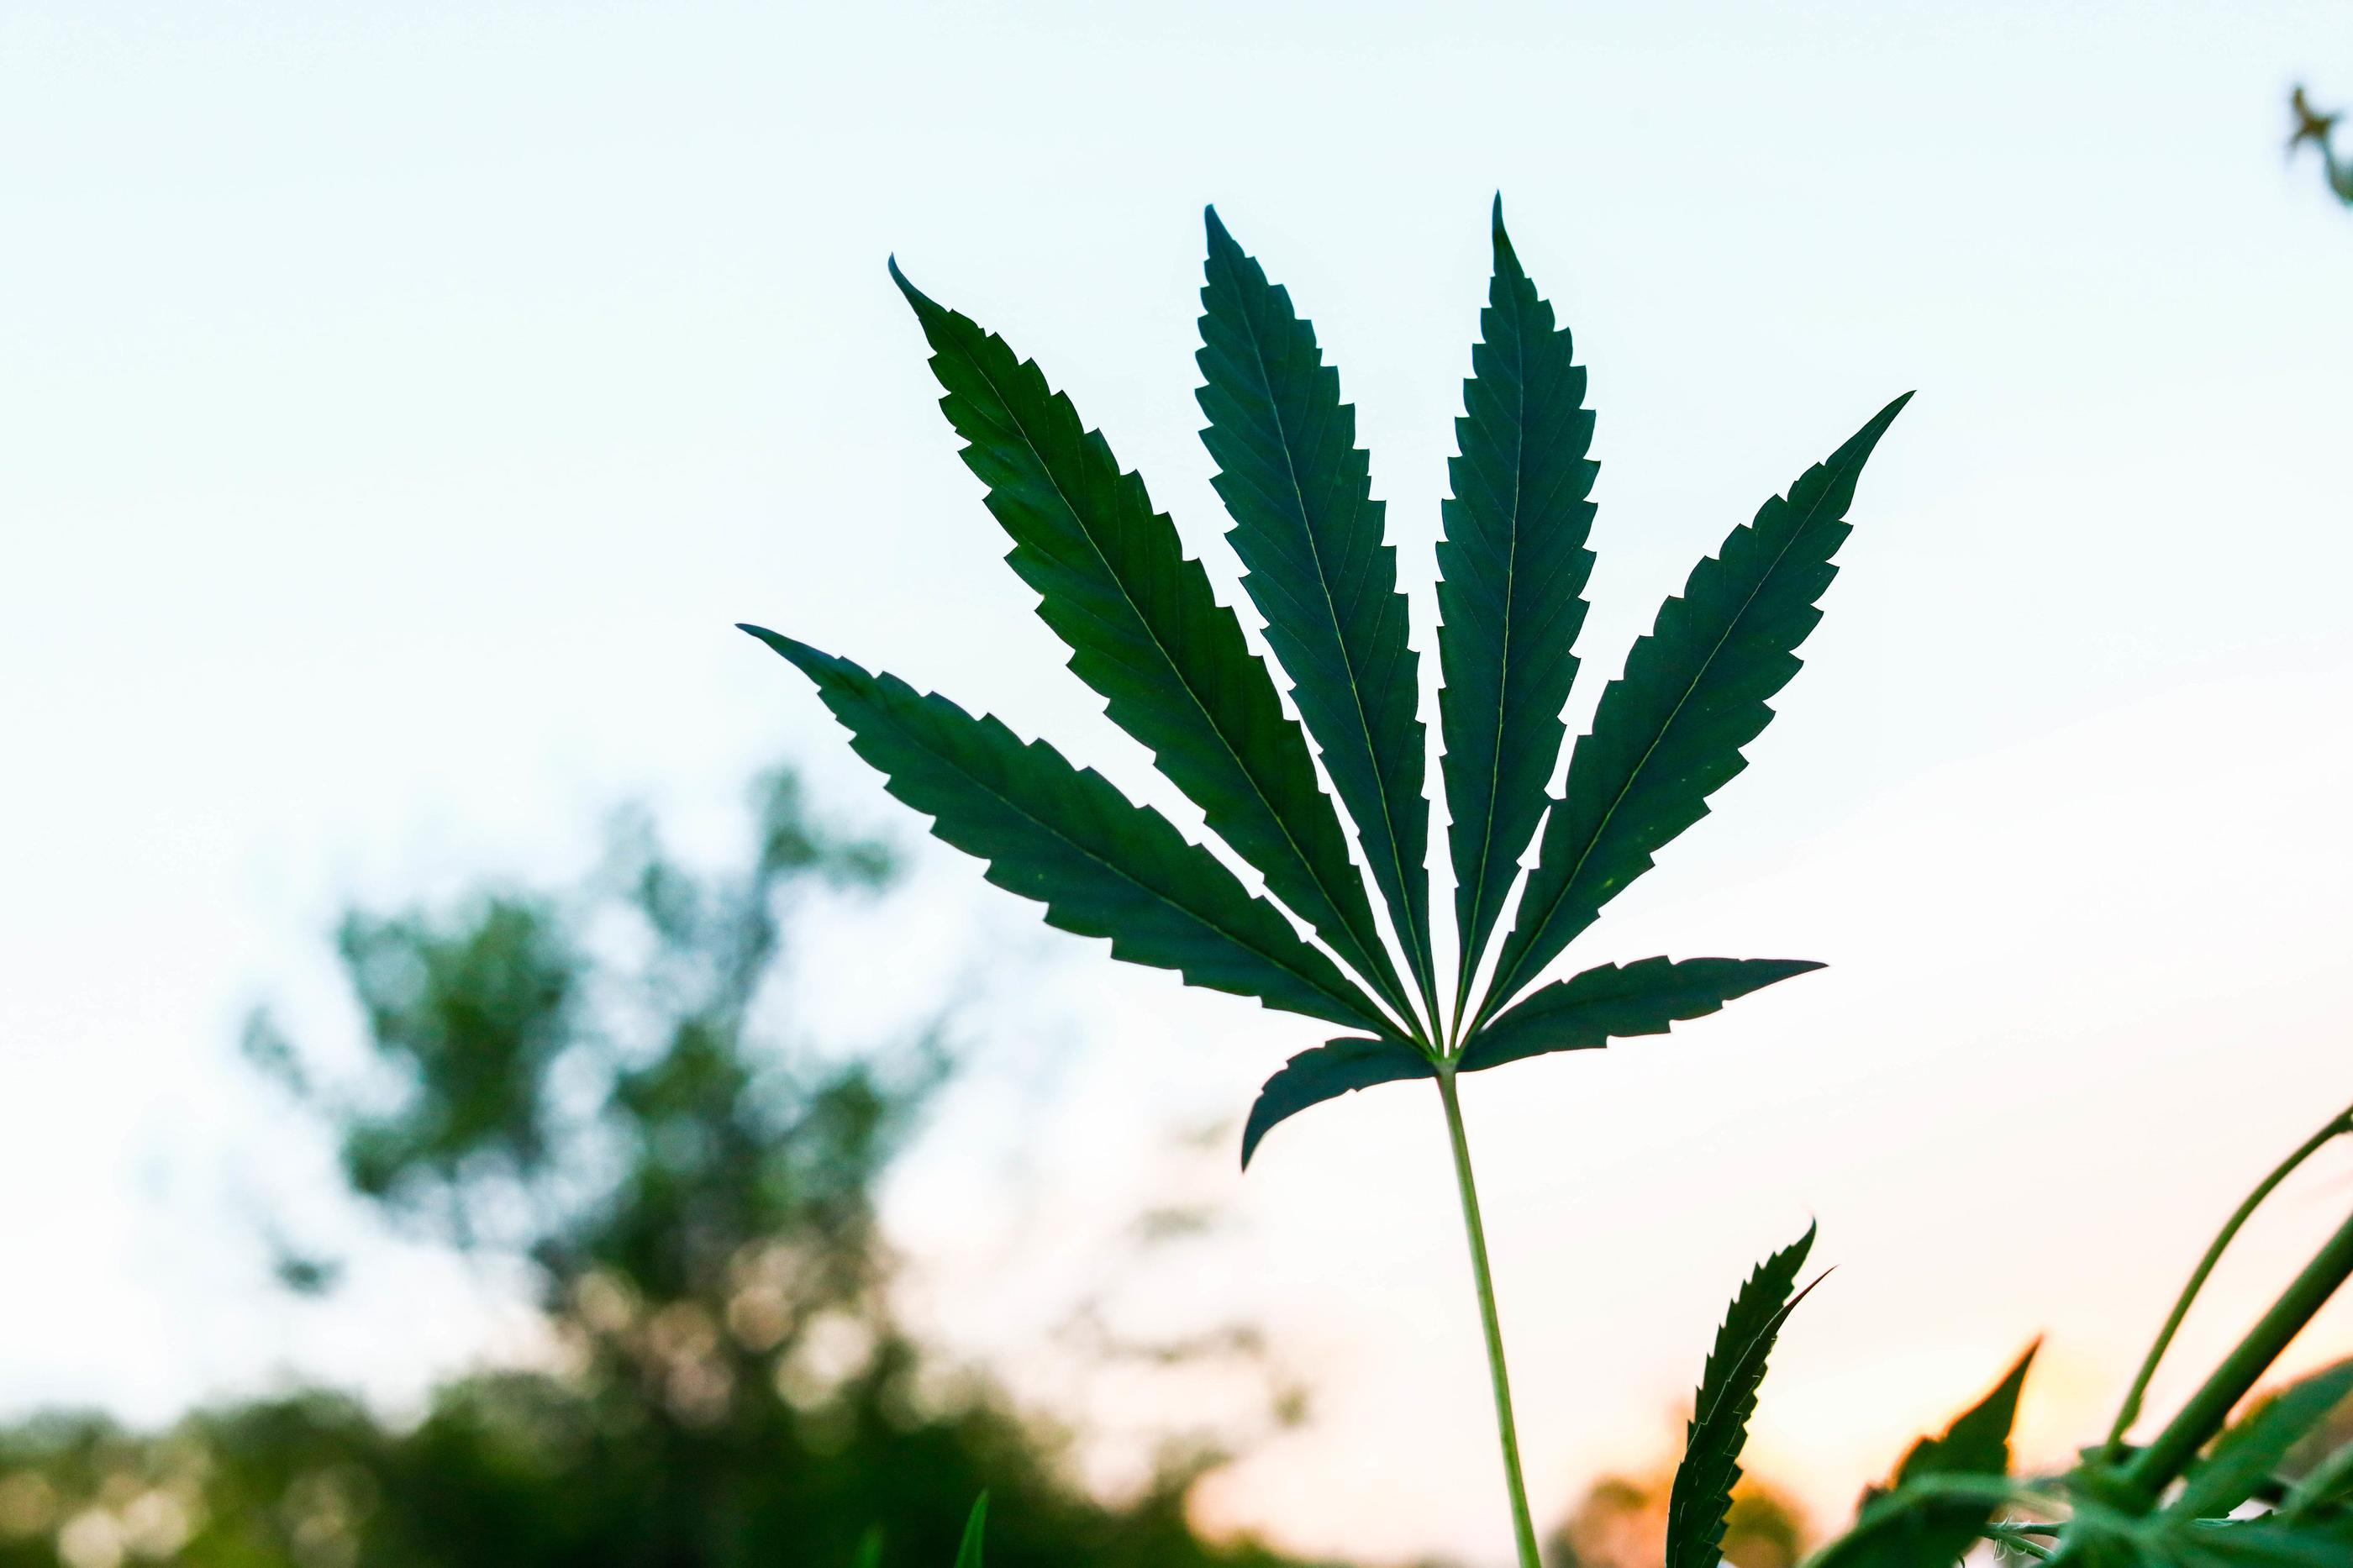 (Illustration). Environ 1,5 kg de plants de cannabis ont été découverts chez le responsable associatif par la police. Des analyses sont en cours pour déterminer s'il s'agit de (vrai) cannabis, ou de CBD. LP/Olivier Corsan